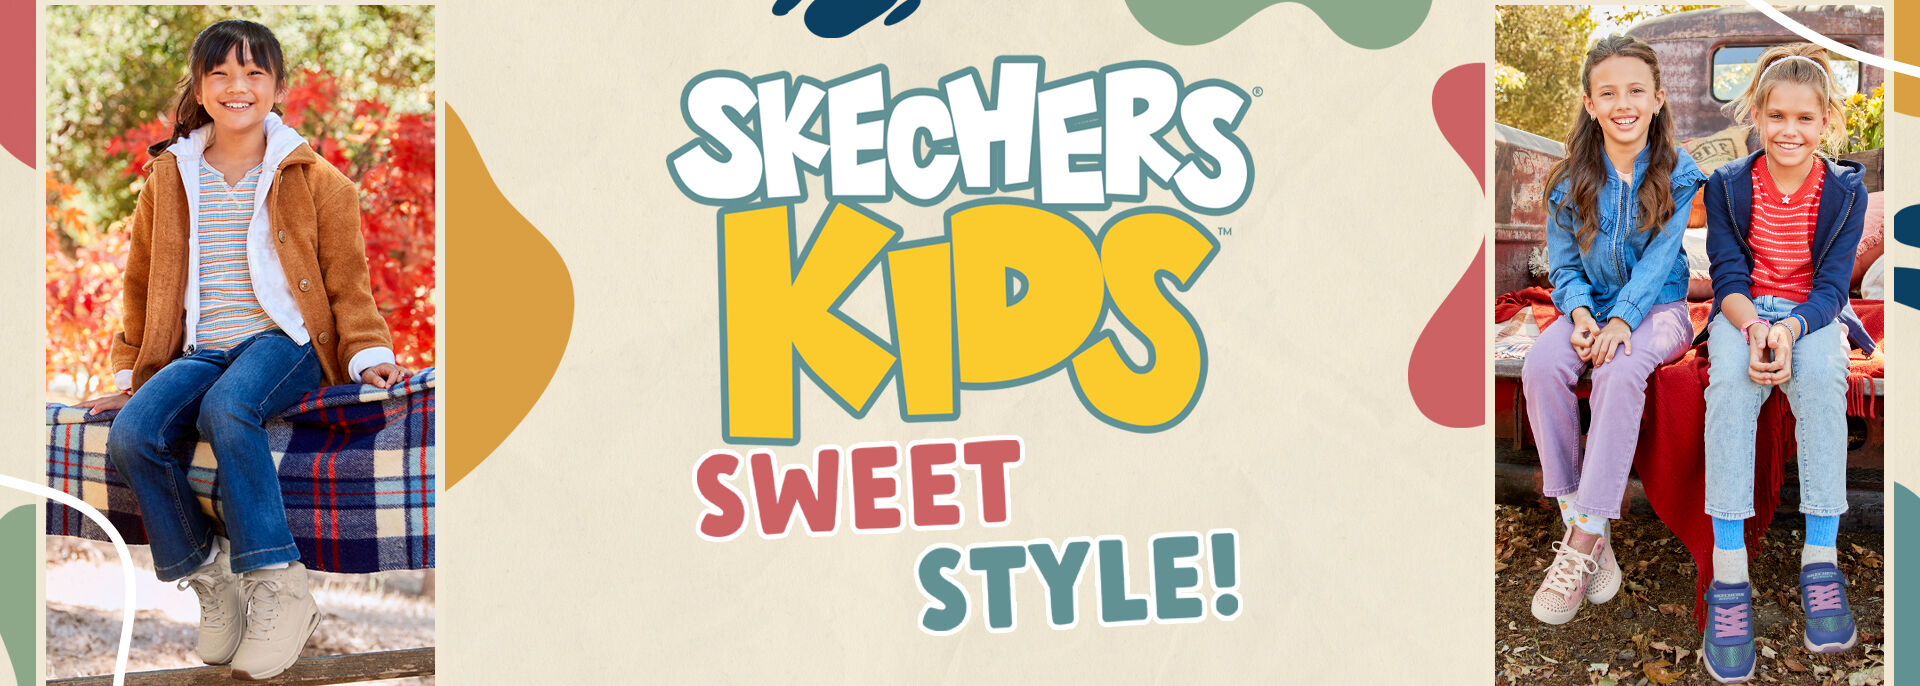 Skechers_Kids_Girl_D.jpg